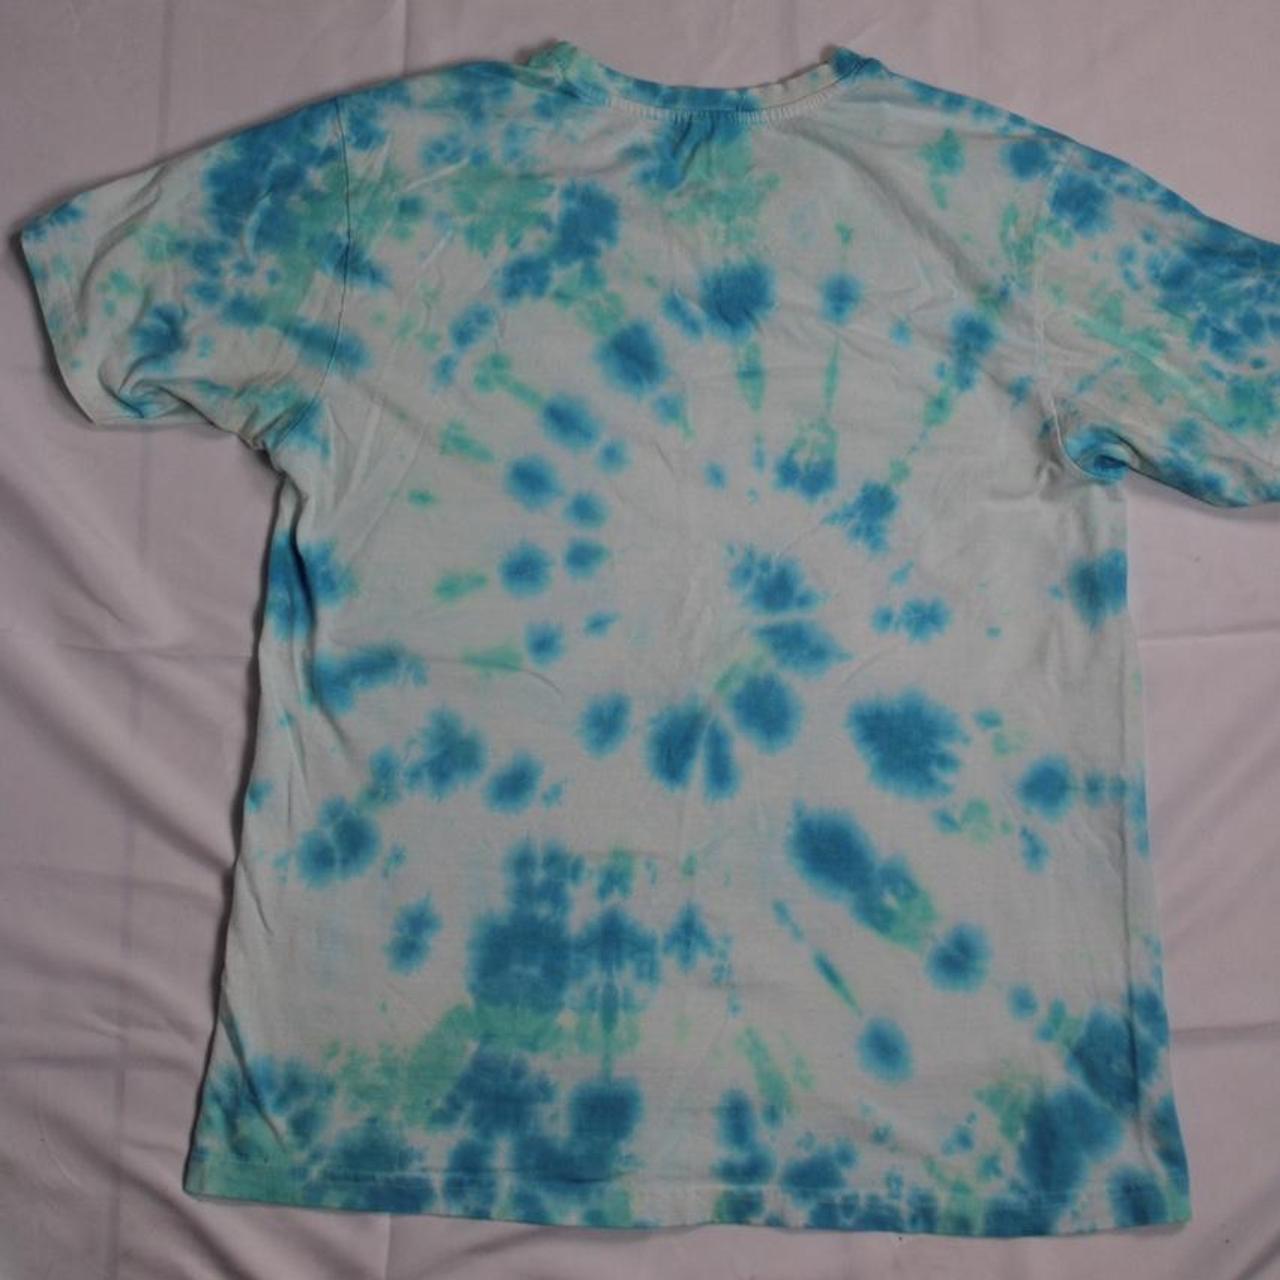 Product Image 4 - Tye dye shirt size medium